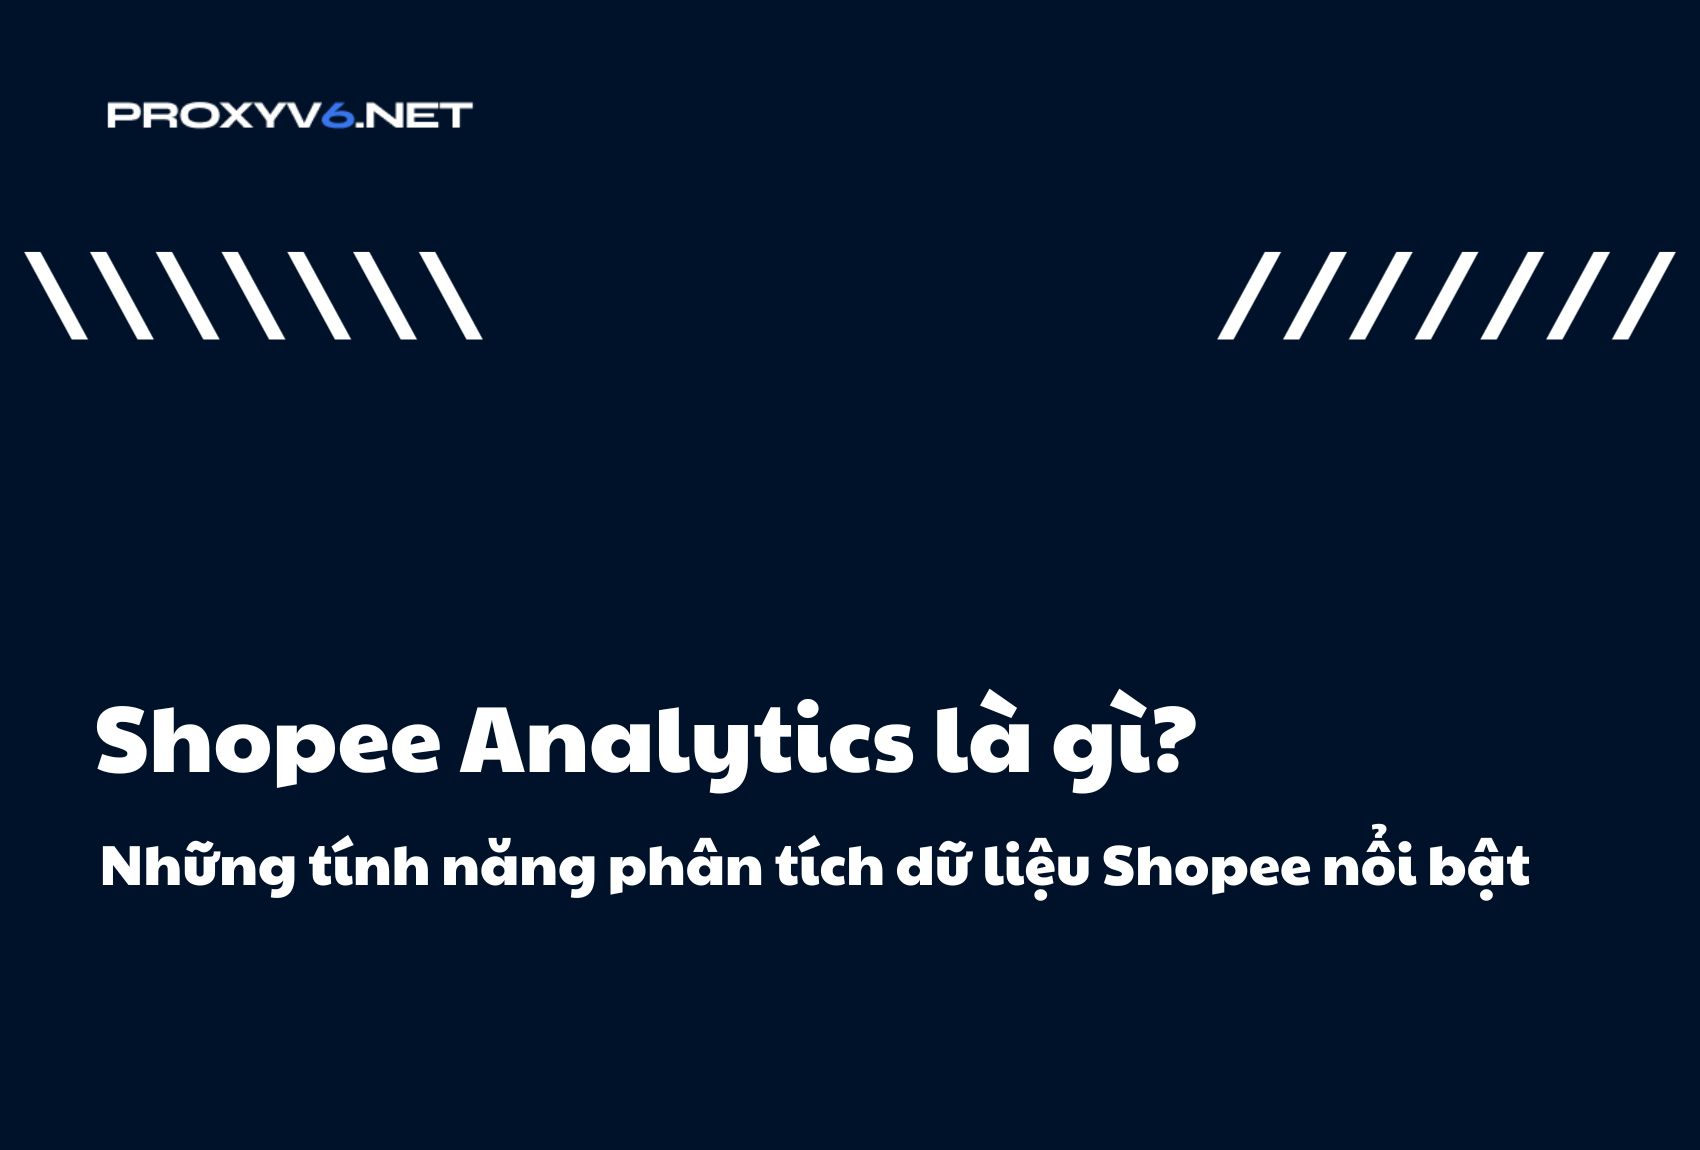 Shopee Analytics là gì? Những tính năng phân tích dữ liệu Shopee nổi bật